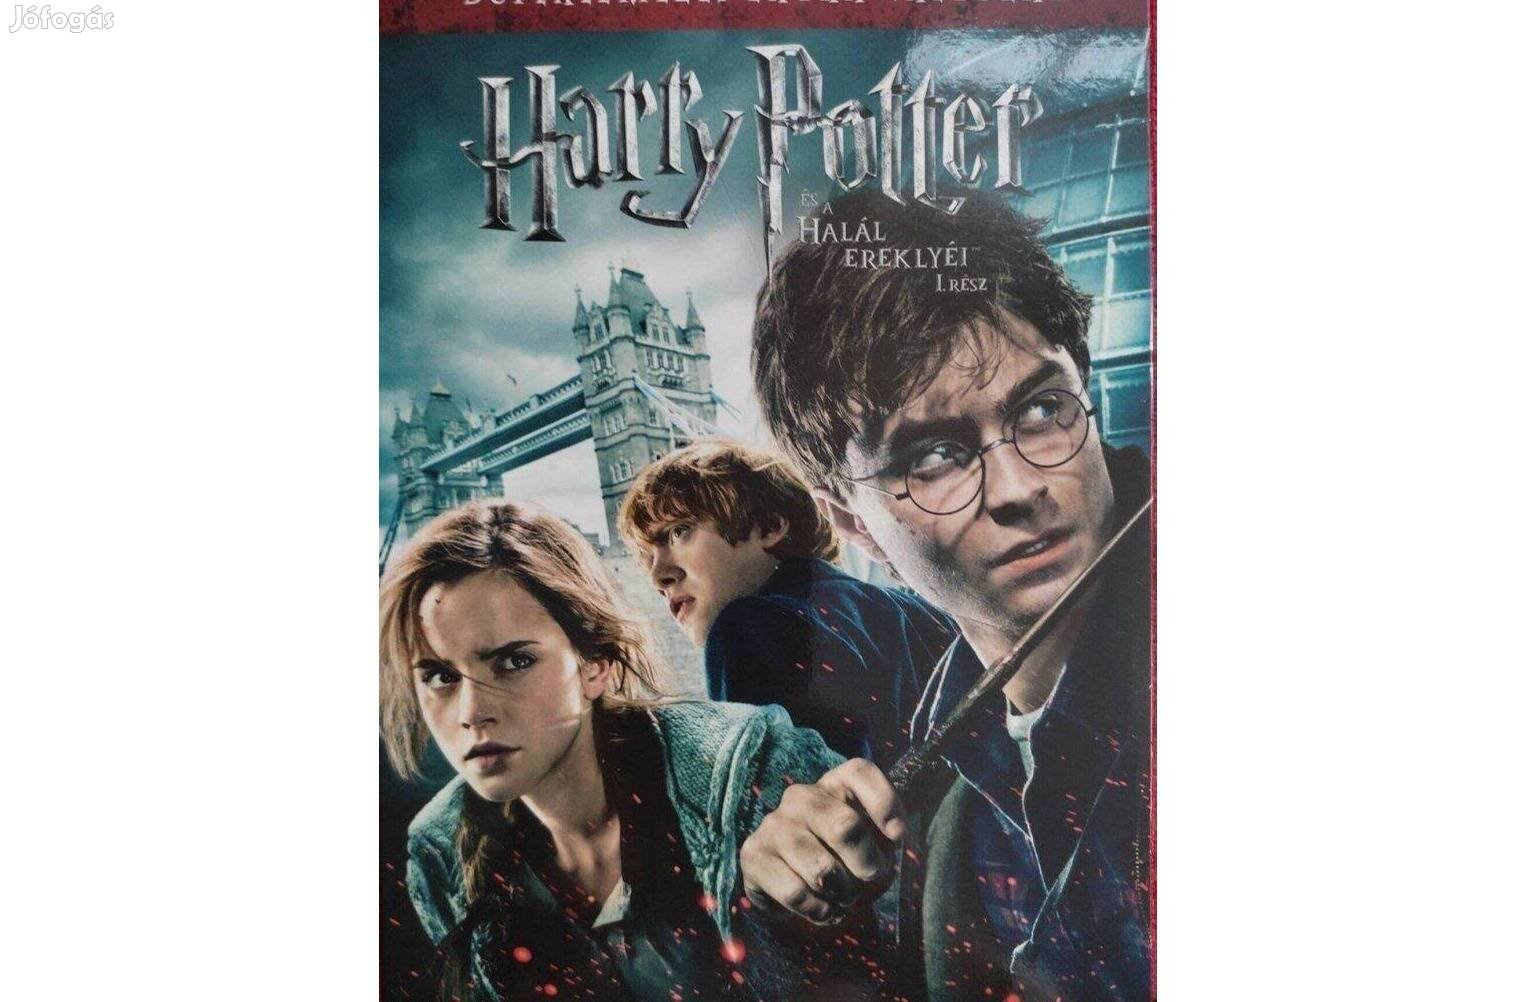 Harry Potter és a halál ereklyéi 1. rész - dupla lemezes DVD